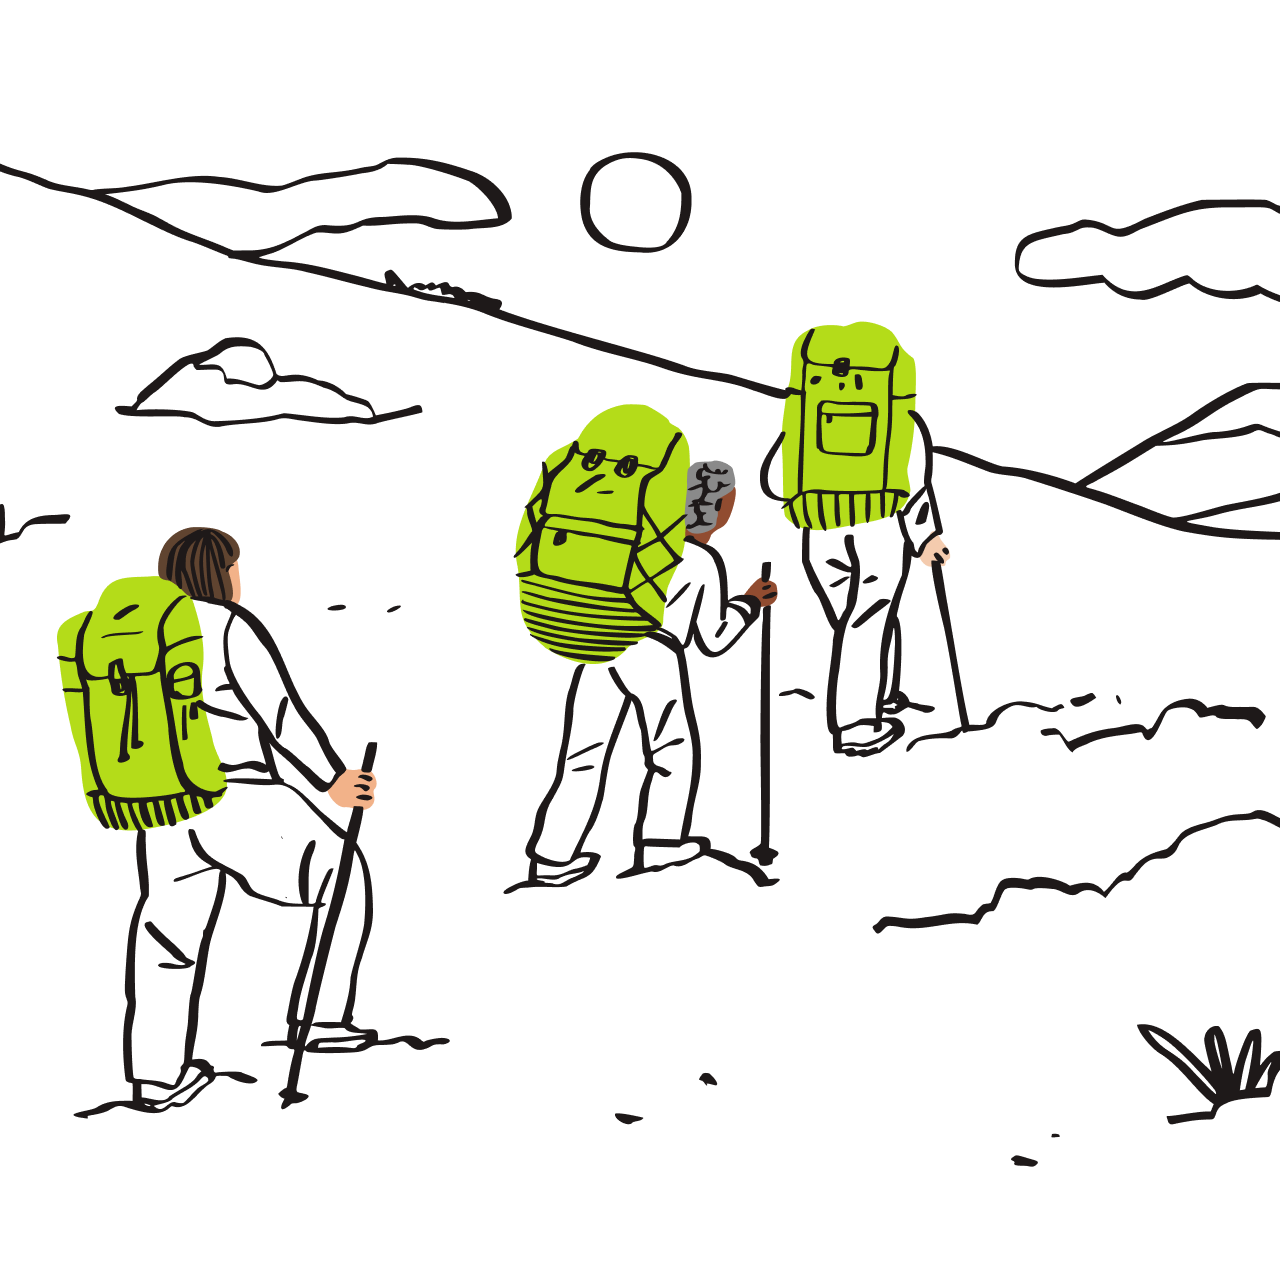 Иллюстрация: трое туристов с рюкзаками идут в поход.